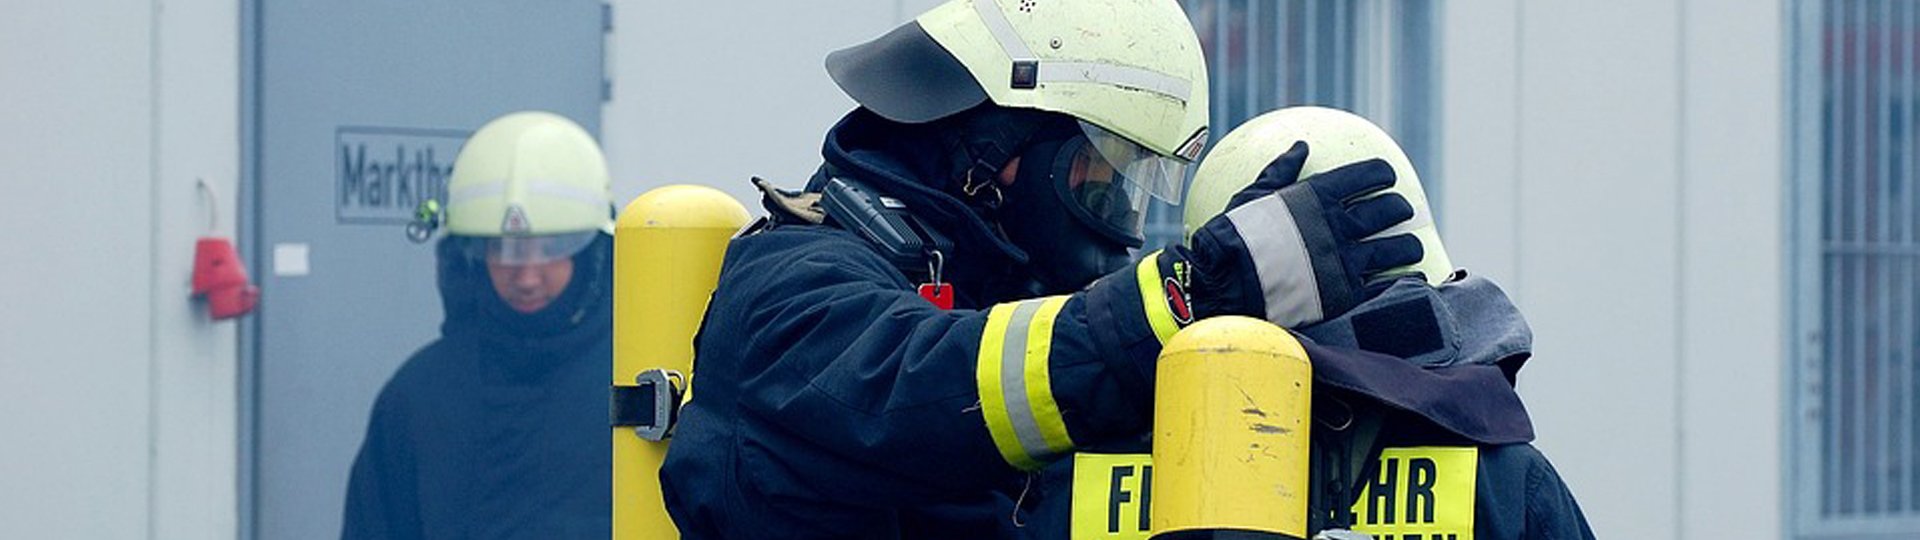 Dienstunfähigkeit für Feuerwehr | DBV Freiberg Roy Bach